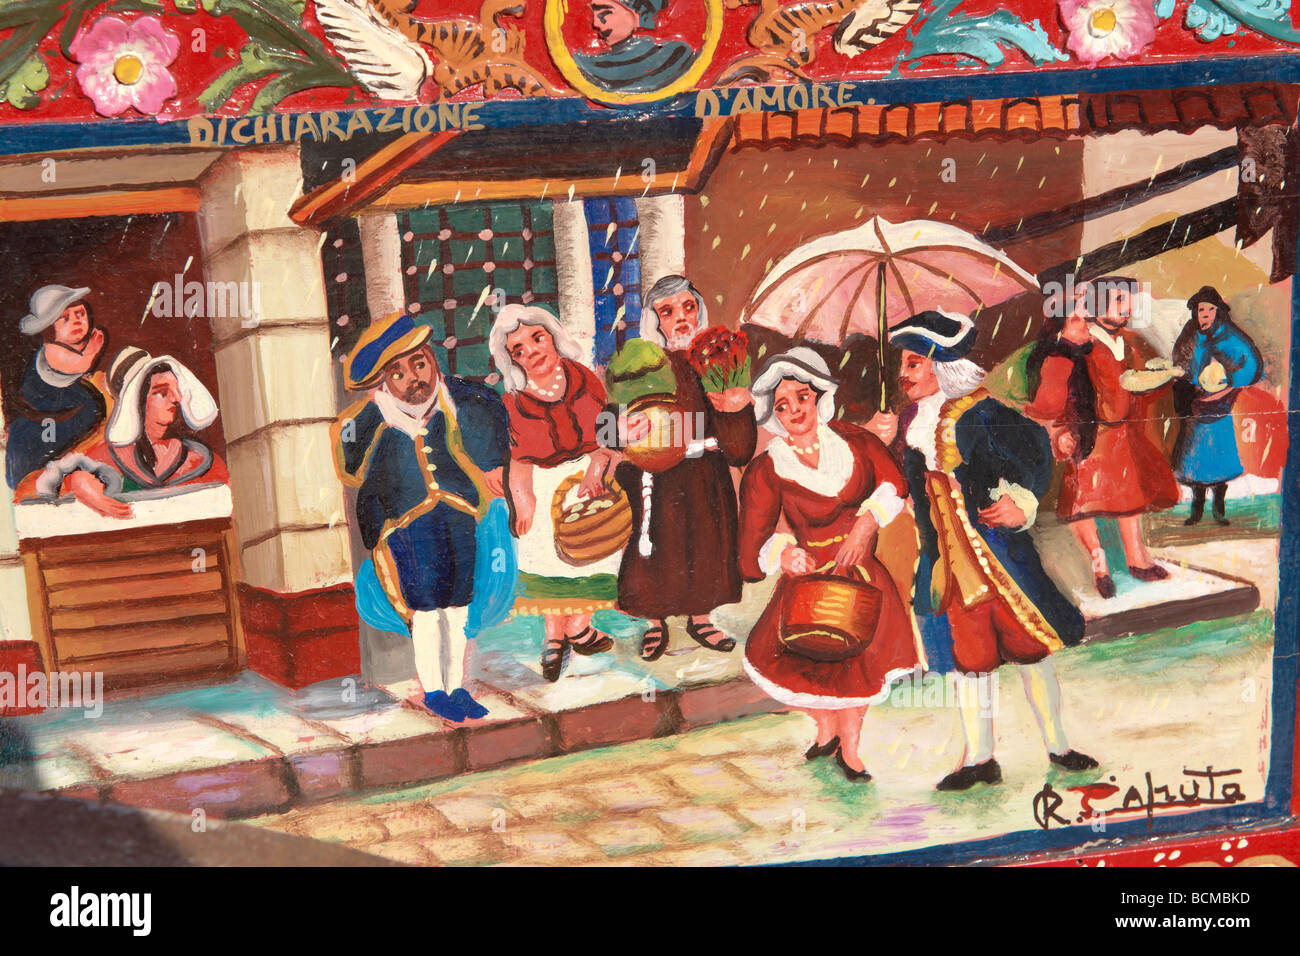 Art folklorique sicilien traditionnel sur une charrette en bois représentant le folk Contes de Sicile Banque D'Images